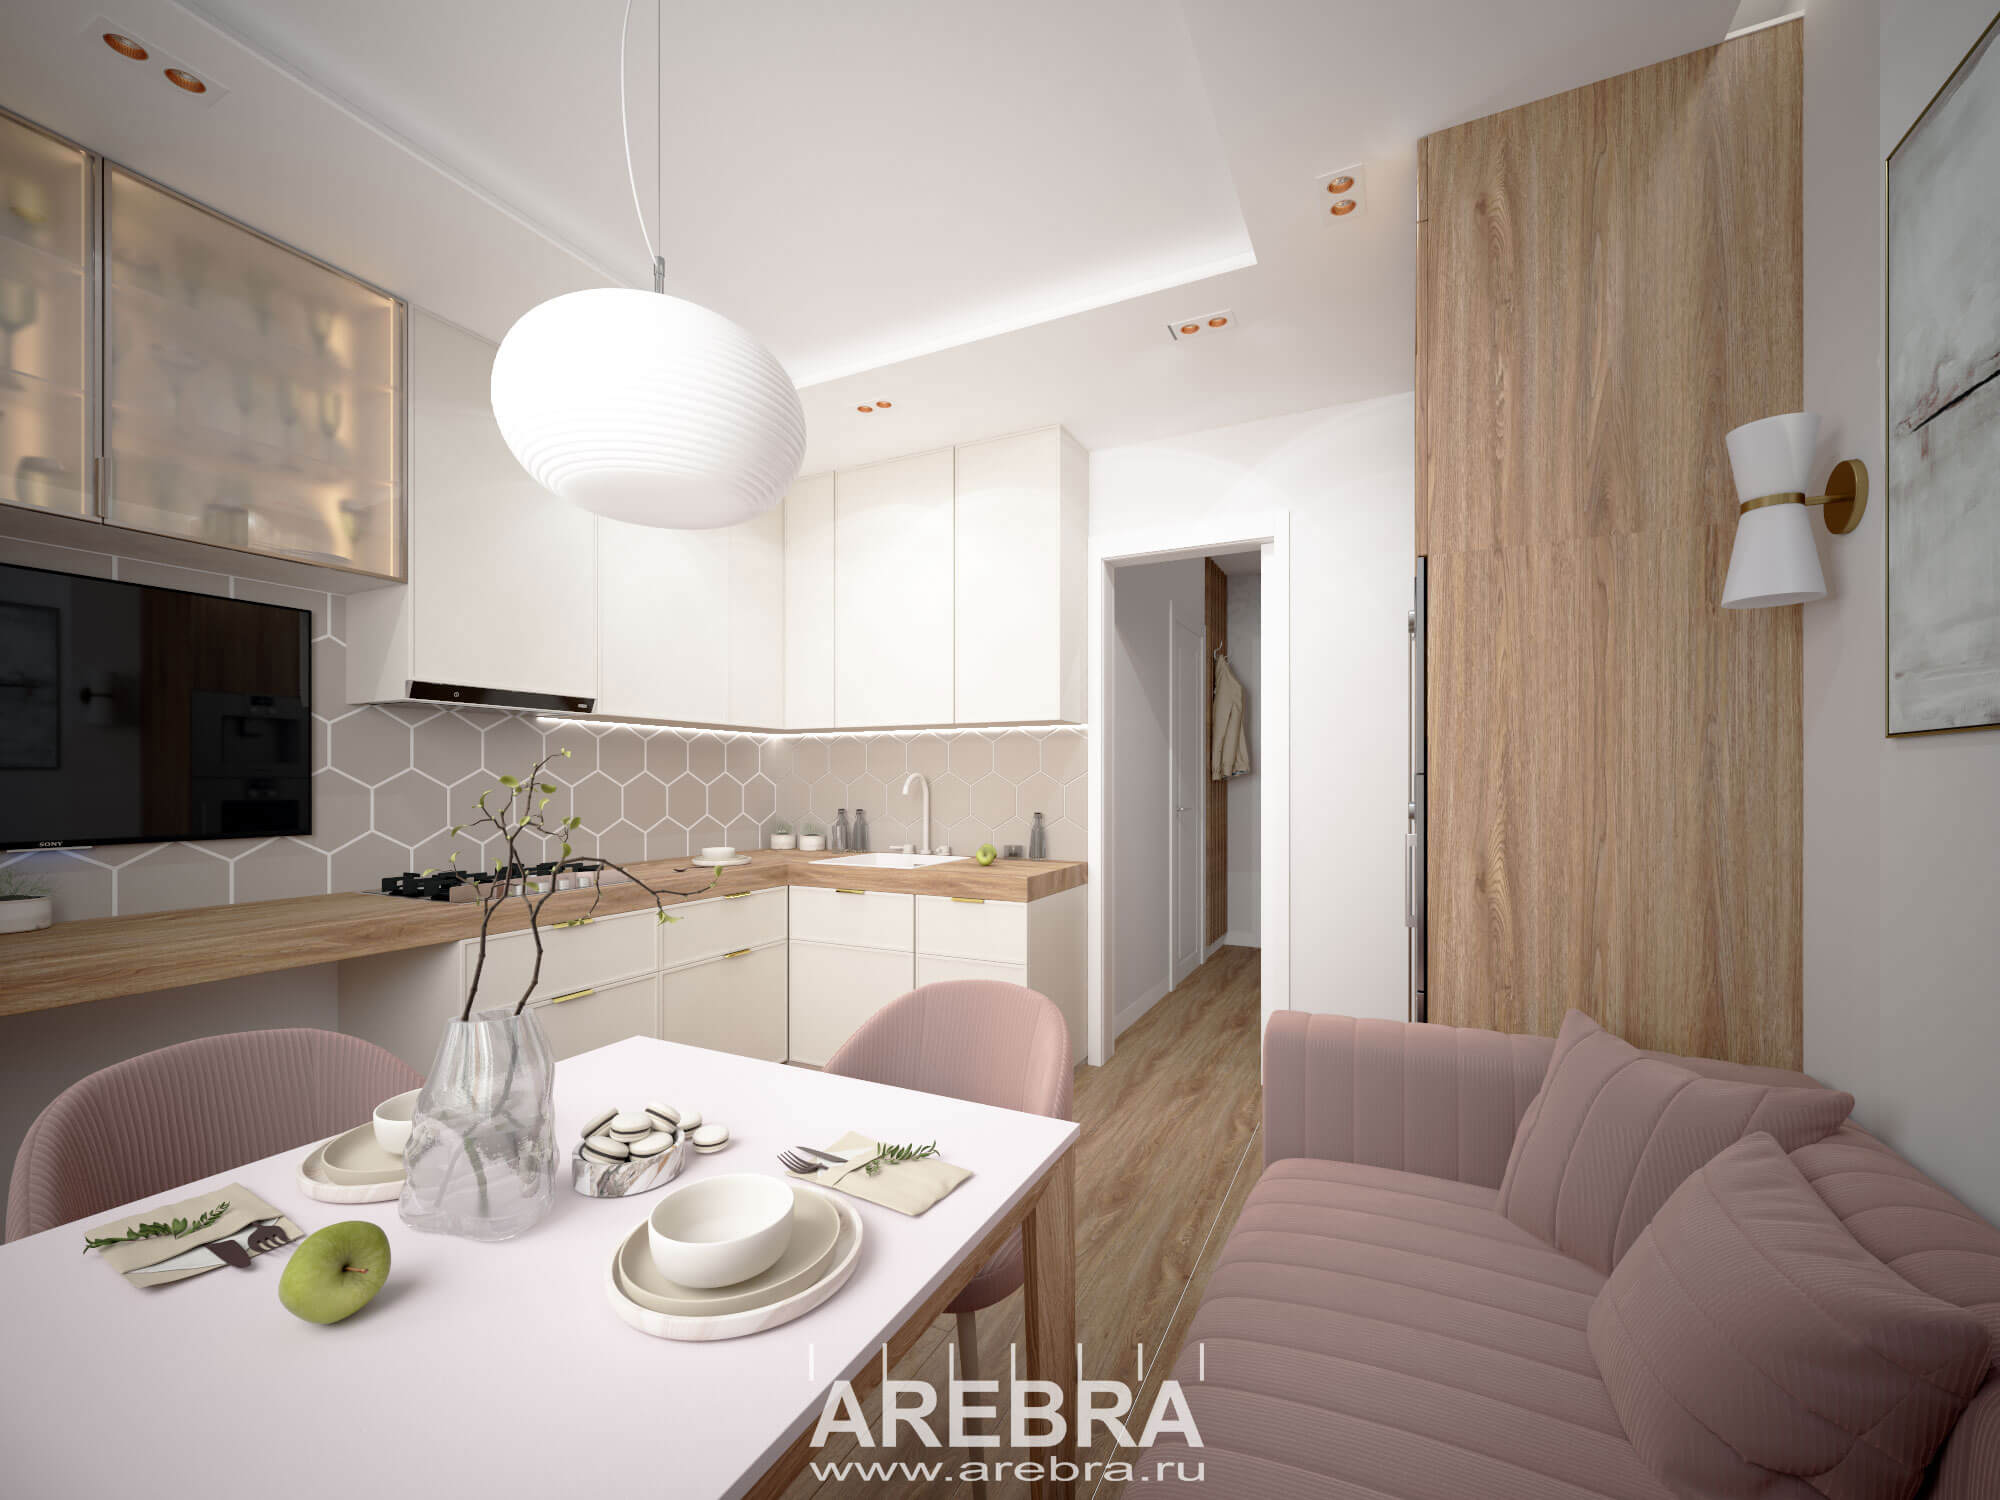 Дизайн проект интерьера однокомнатной квартиры общей площадью 37,6м2 , г. Санкт-Петербург